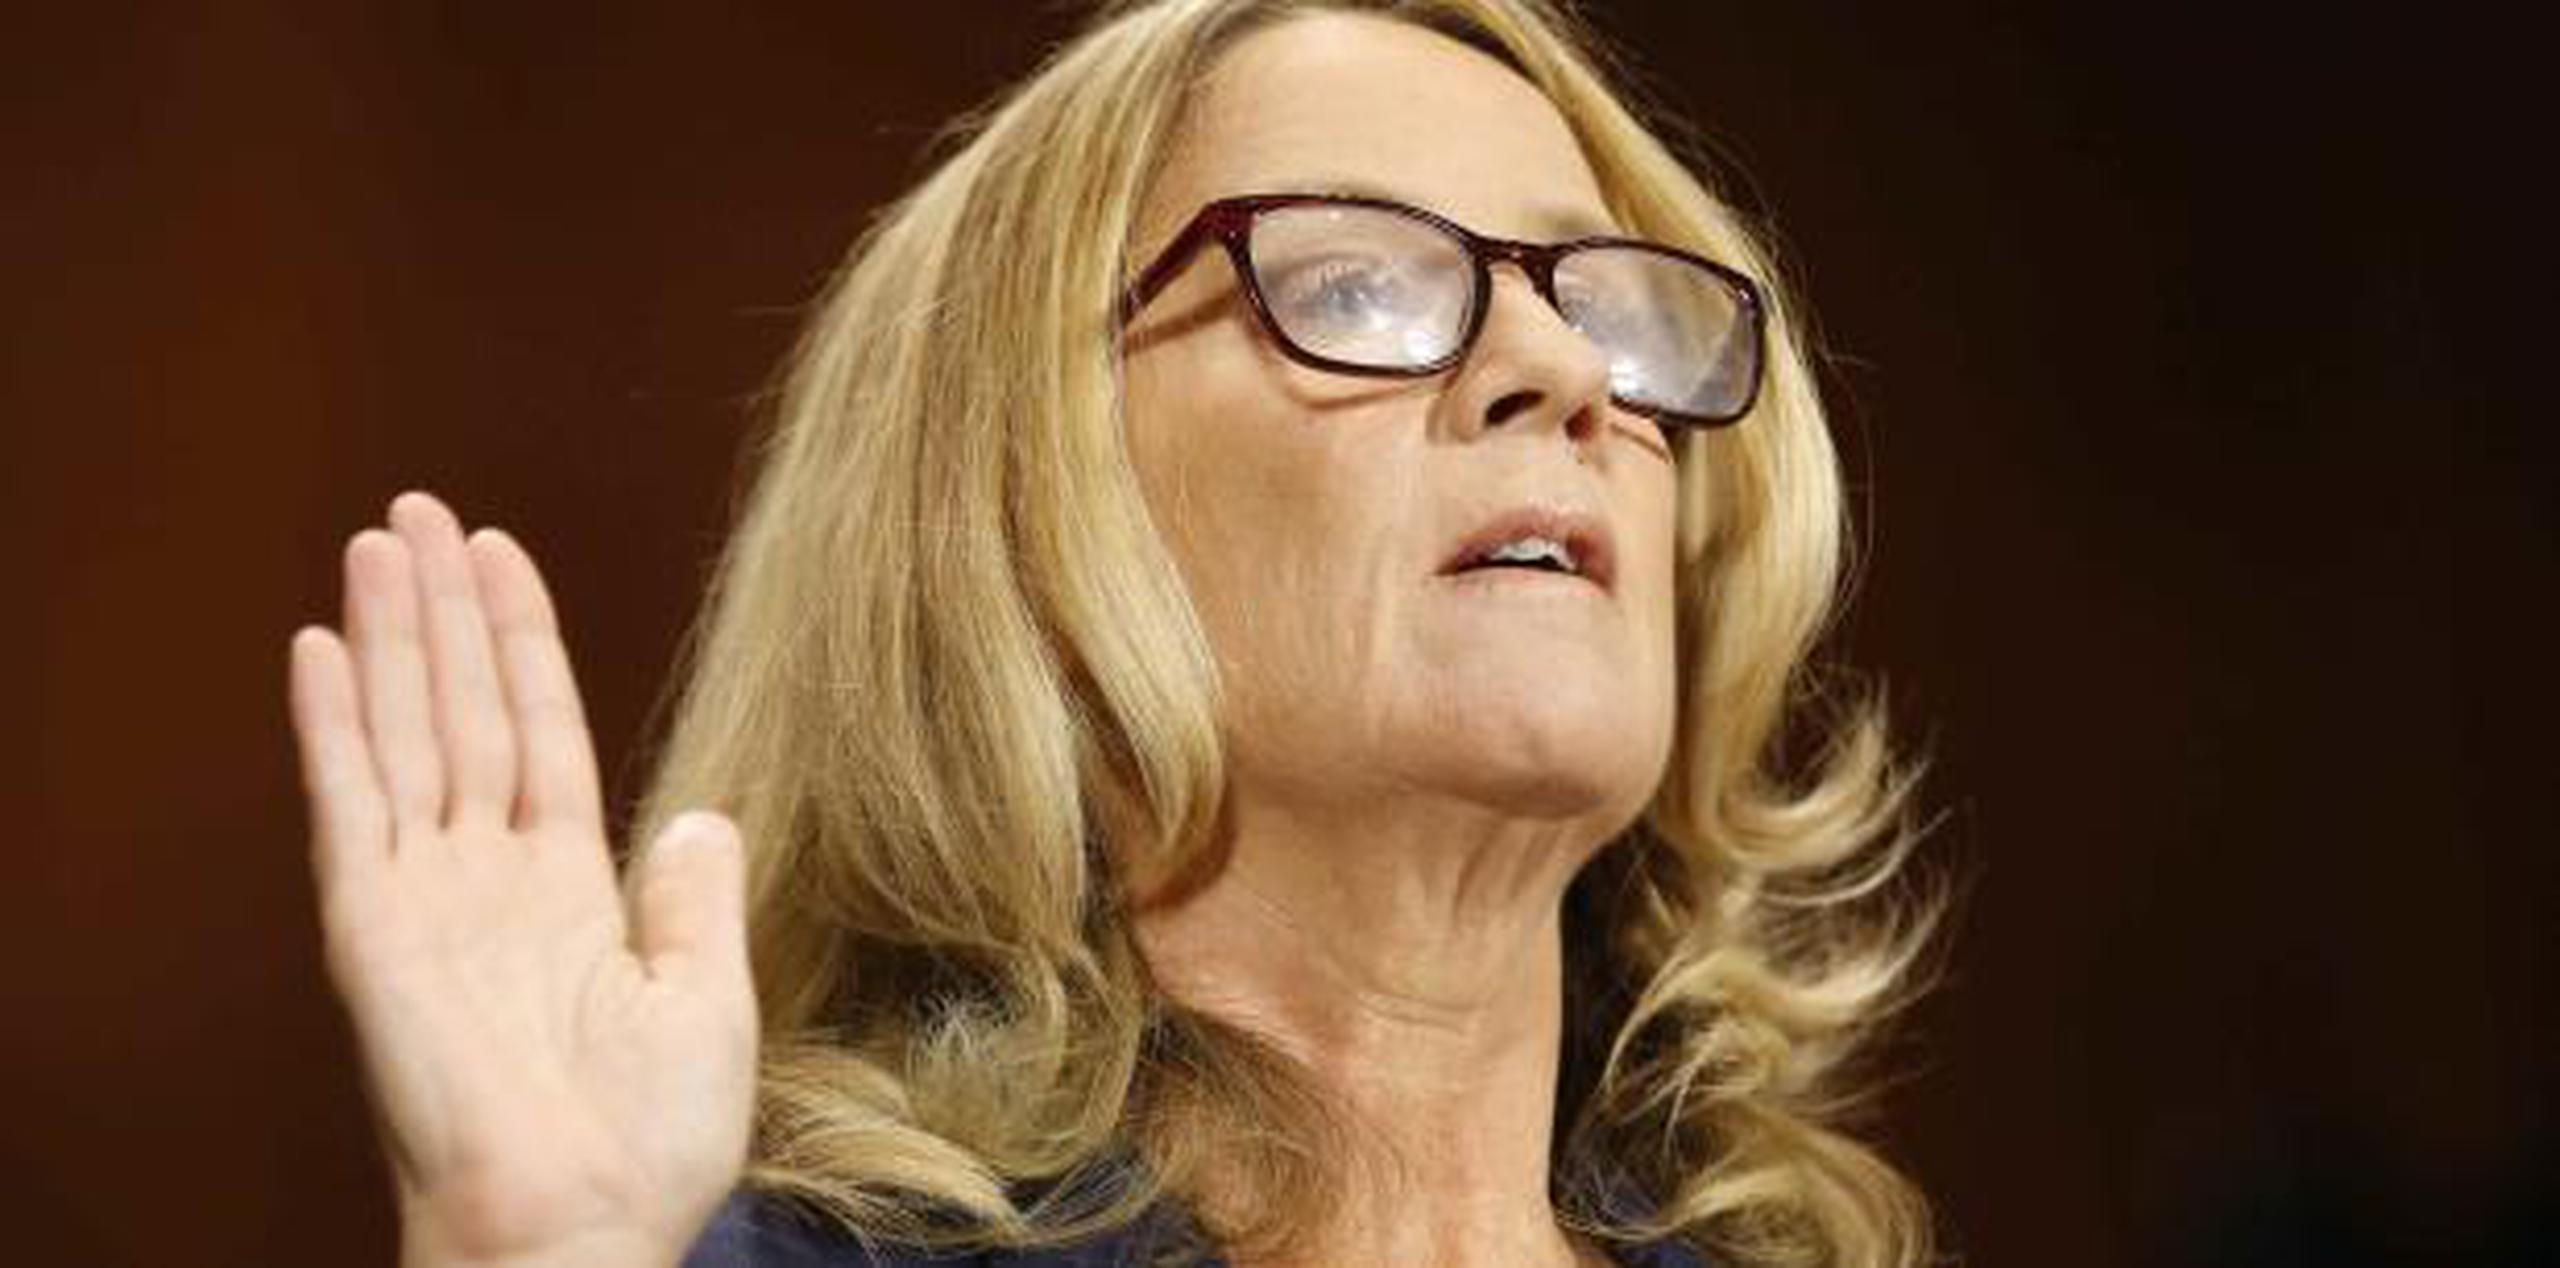 Tanto Ford como Kavanaugh testificarán en una comparecencia pública y monográfica sobre esta presunta agresión sexual. (AP)

